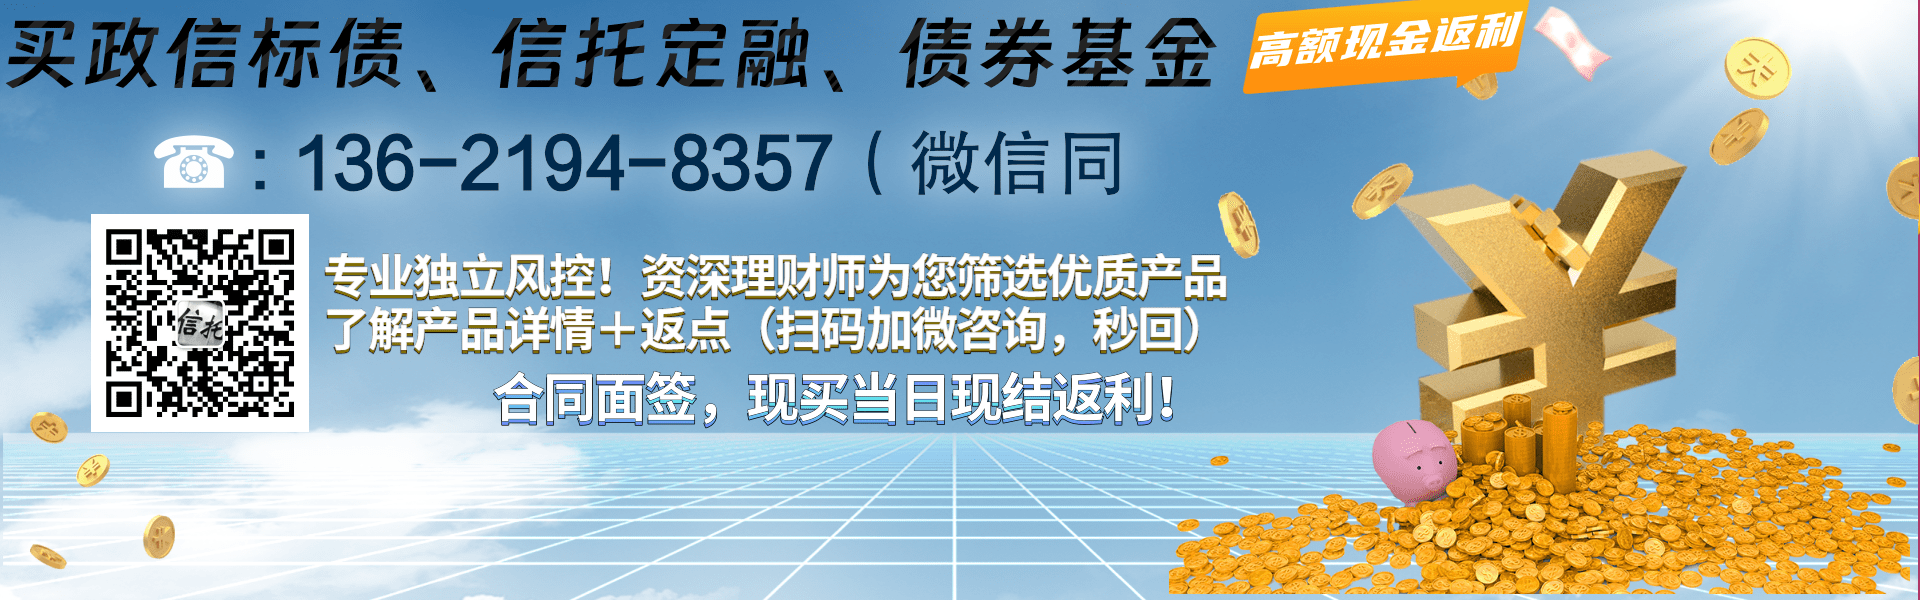 山东潍坊滨海新城公有债权计划